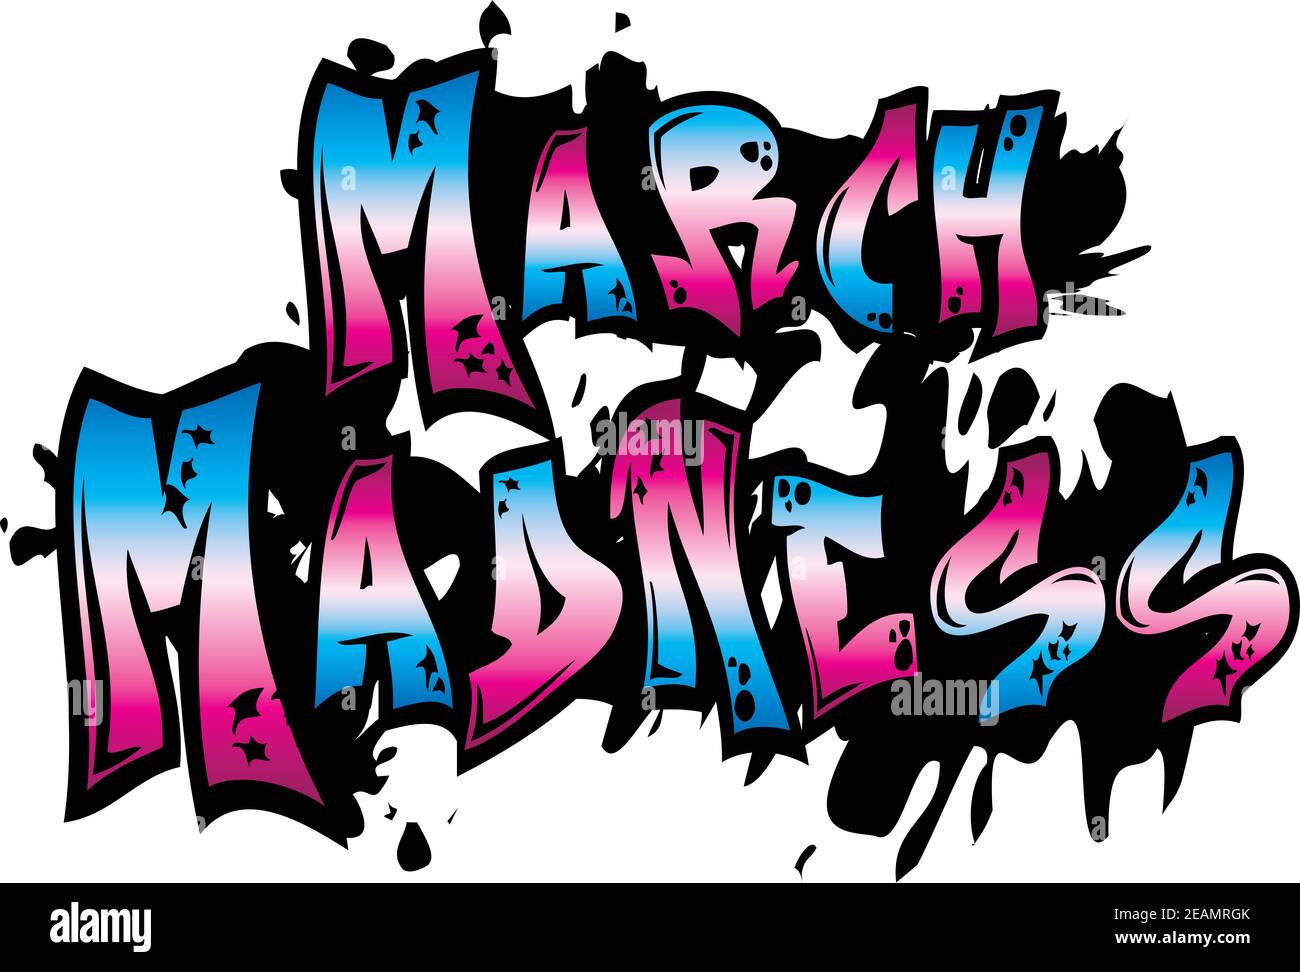 March Madness Graffiti Art Stock Photo Alamy